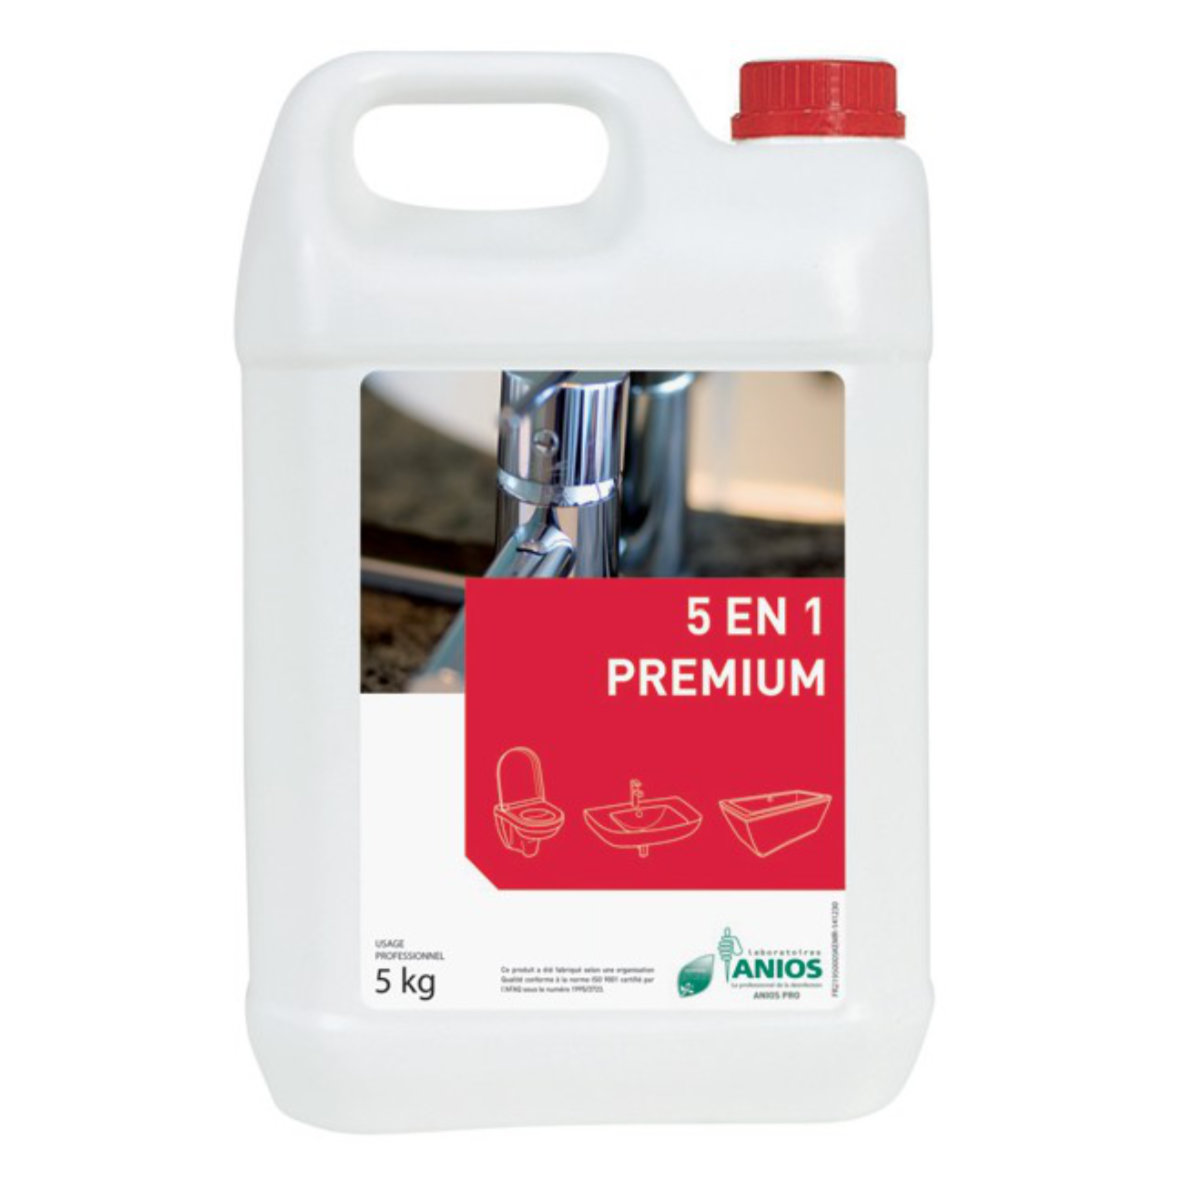 Nettoyant détartrant désinfectant sanitaires 5 en 1 - Premium - ANIOS_0